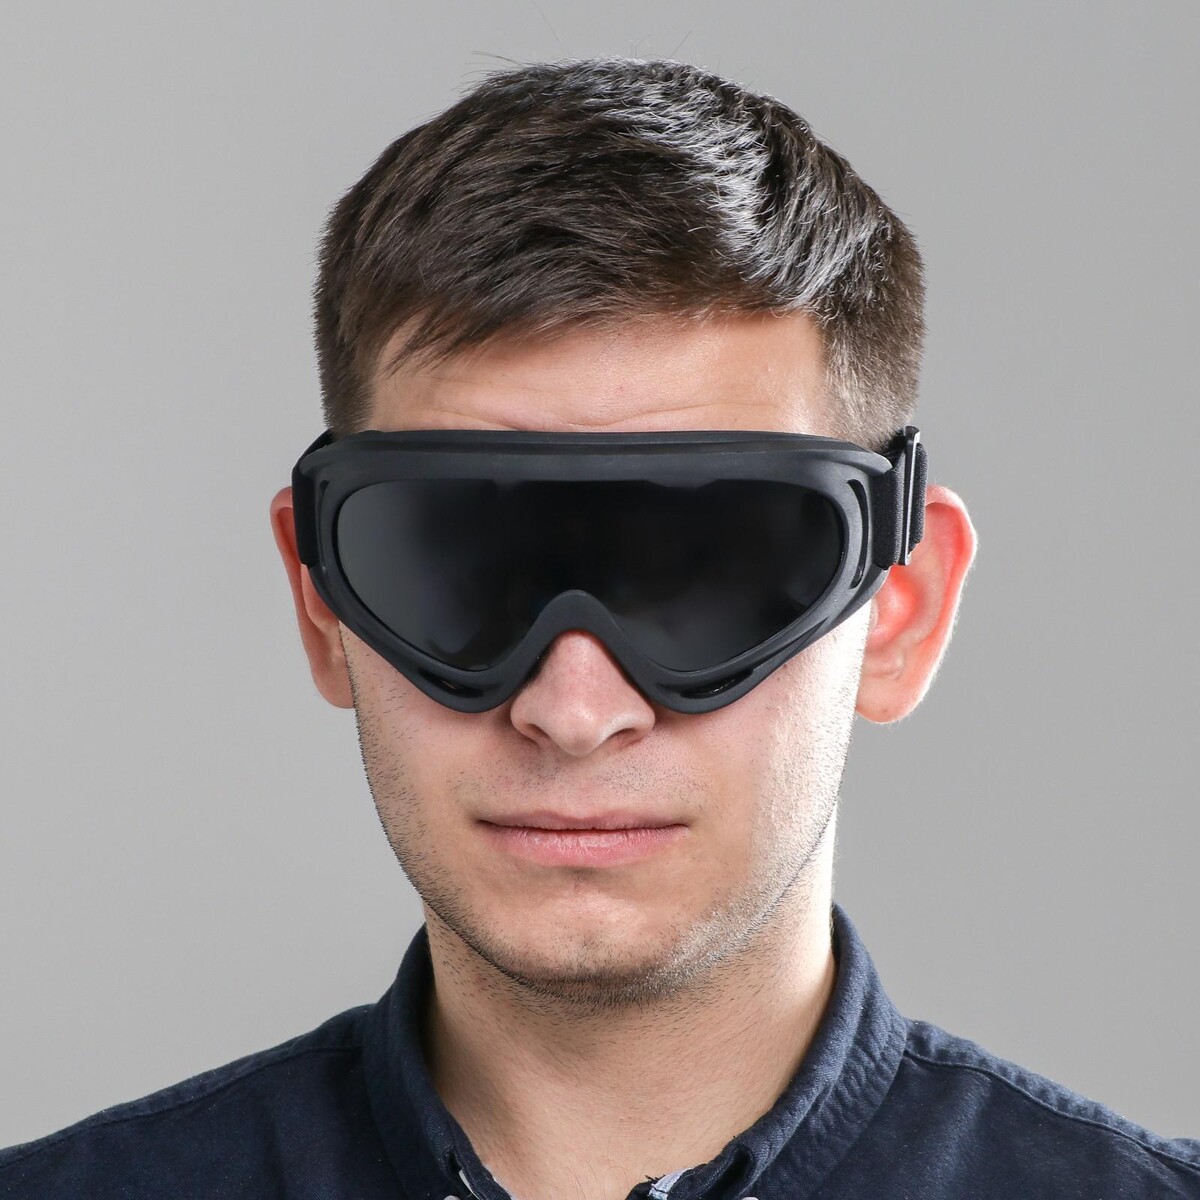 Купить очки маркет. Очки с затемнением. Очки сплошные солнцезащитные. Очки с затемненными стеклами. Затемненные очки для зрения мужские.